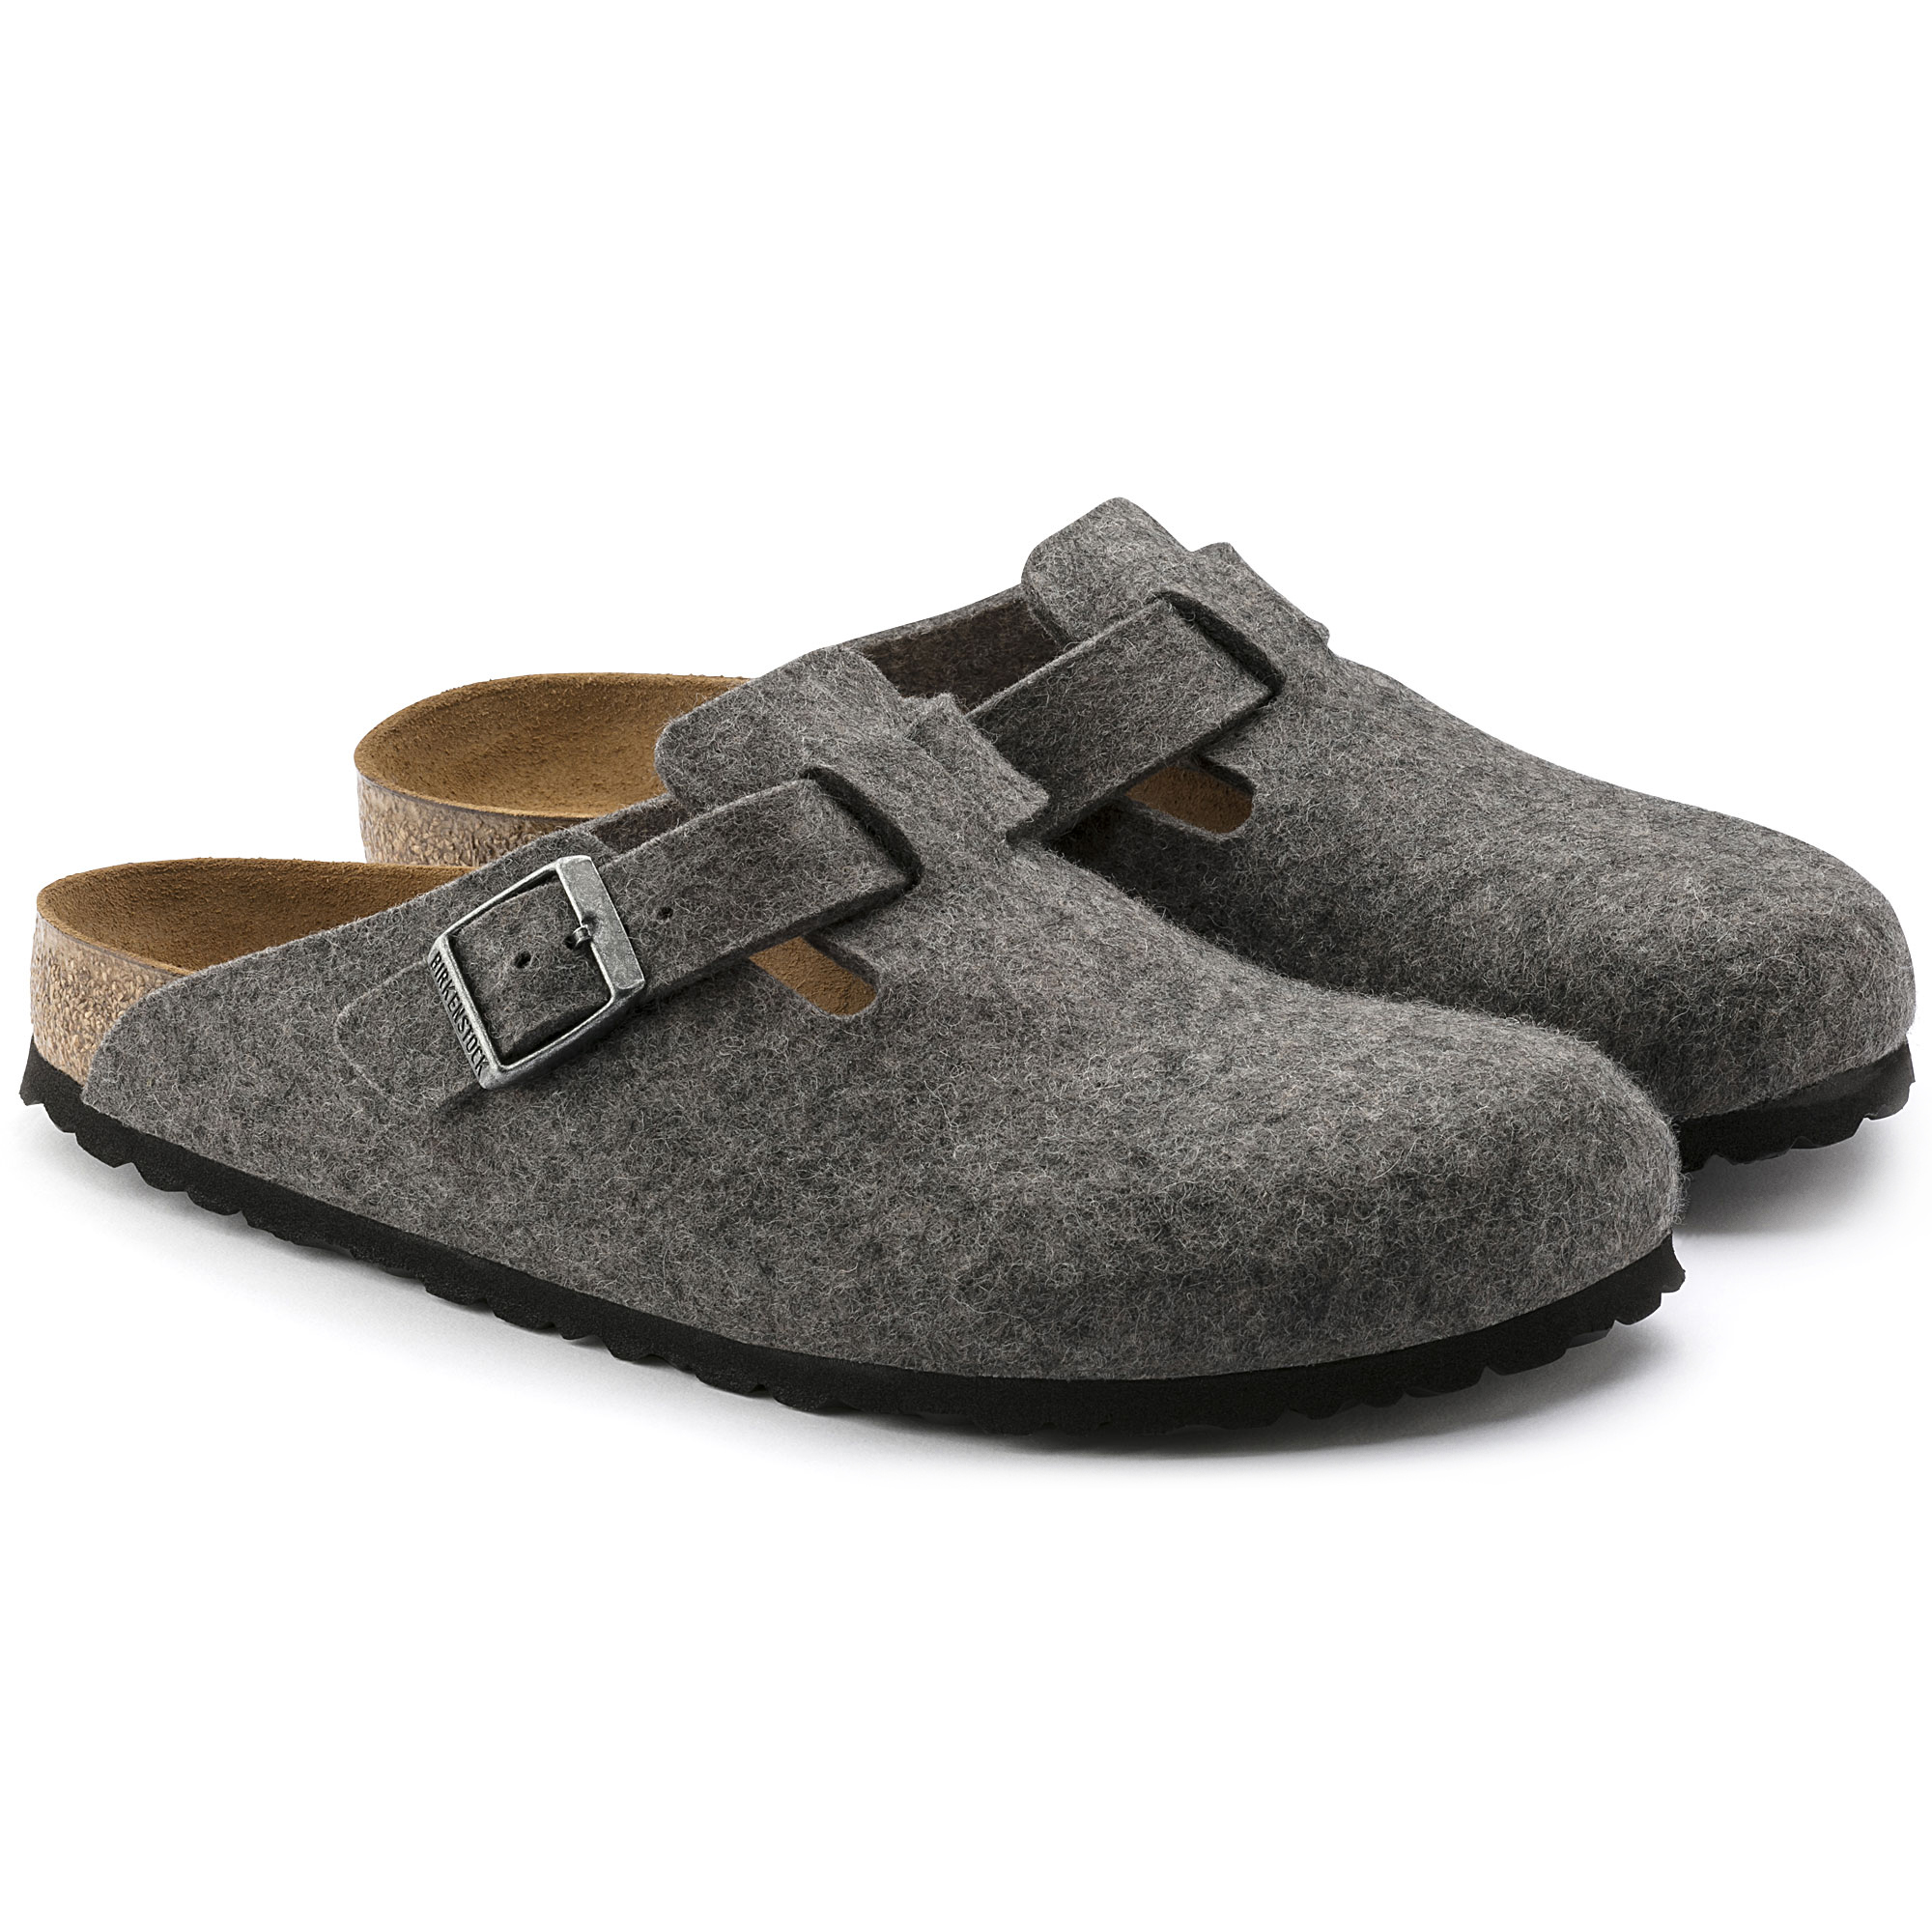 birkenstock boston wool felt grey